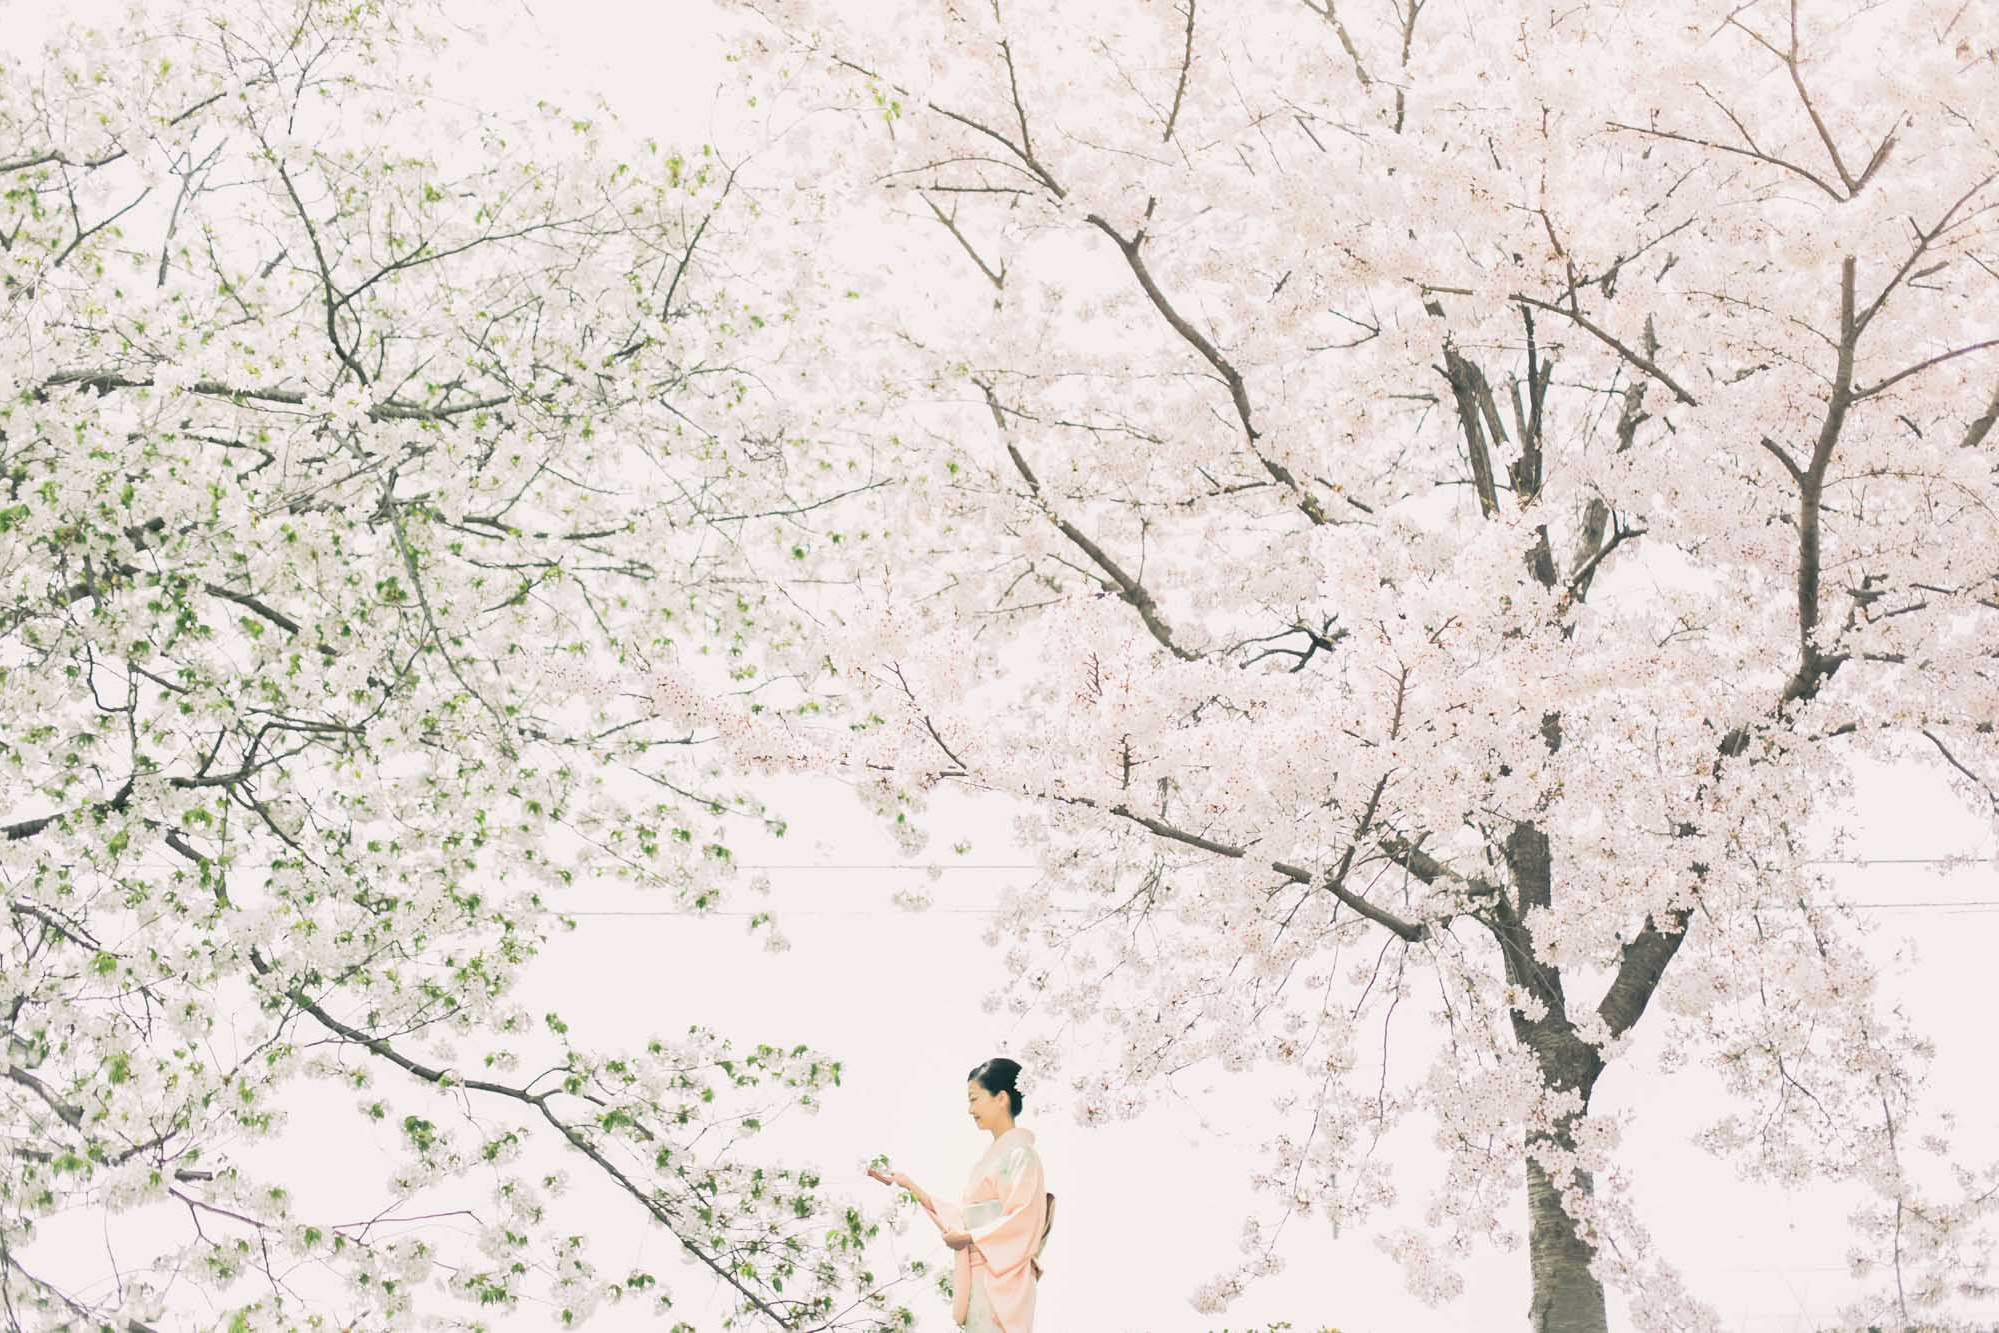 japanprewedding  japanphotographer japanweddingphotographer weddingphotographer kyotophotographer kyotoprewedding kyotoweddingphotographer kyotofamilyphoto kyotocouplephotoengagementphoto kyotoengagementphoto